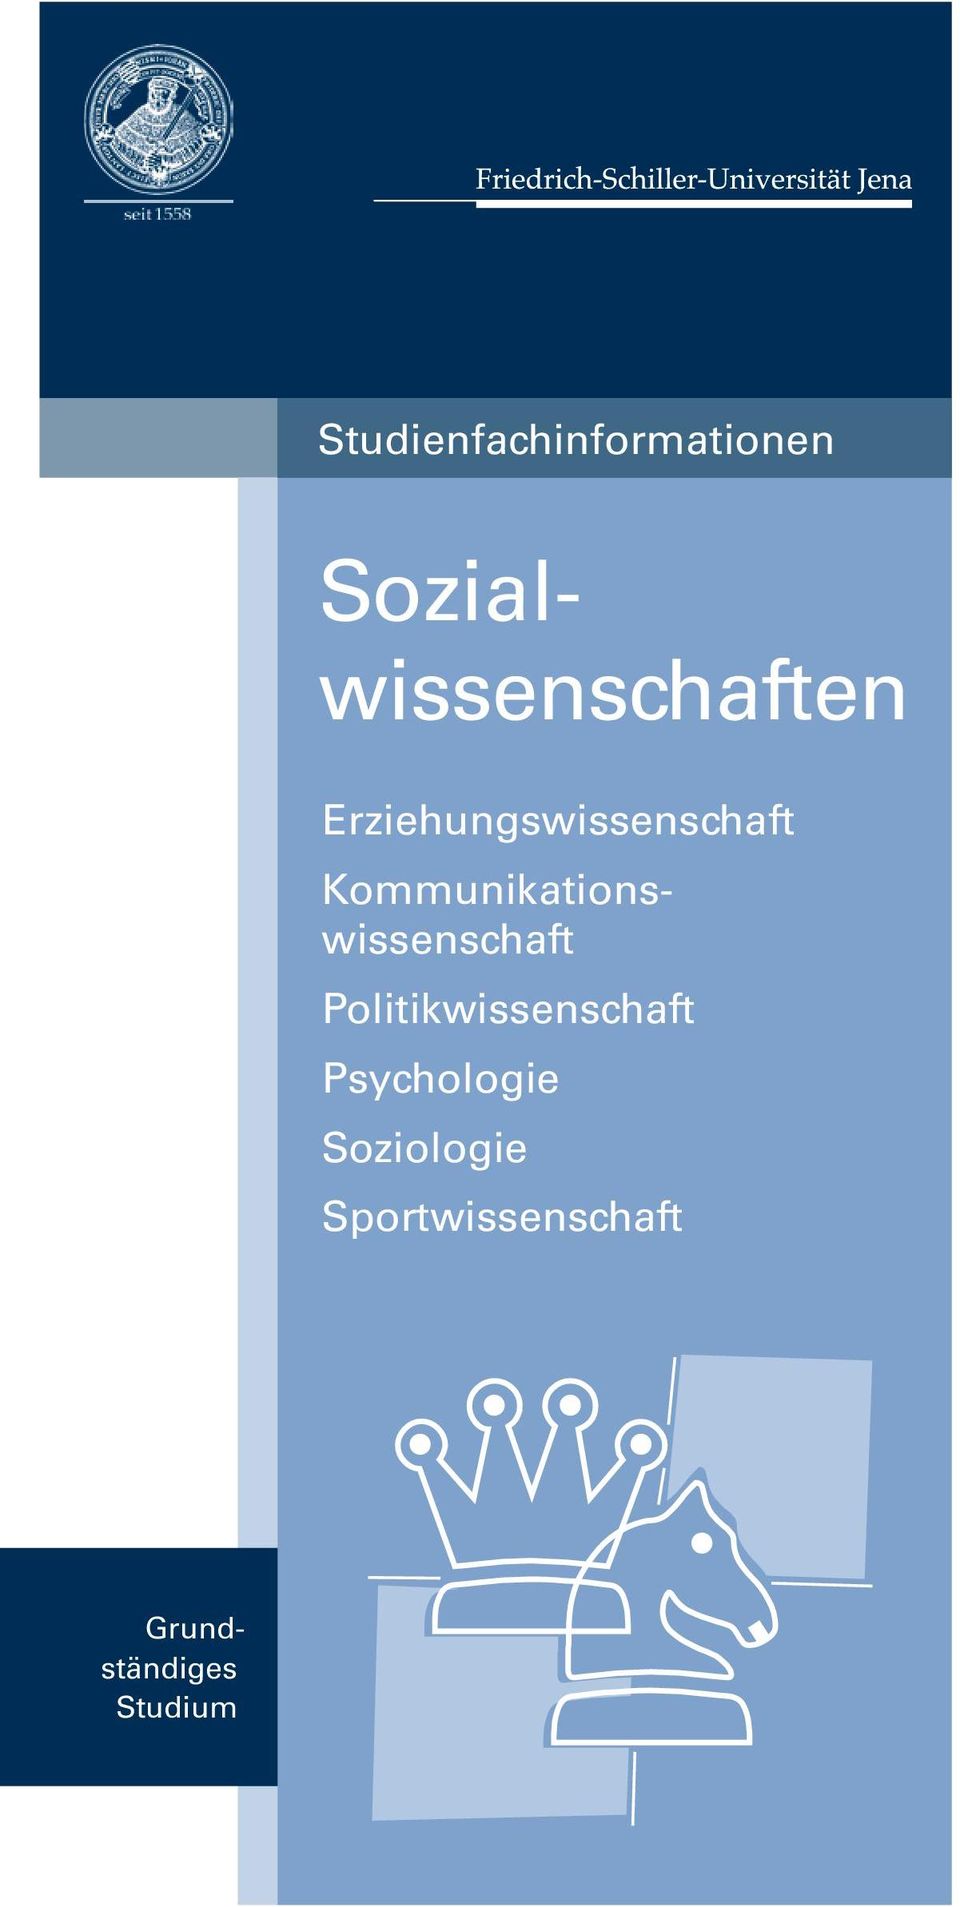 Psychologie Soziologie Sportwissenschaft